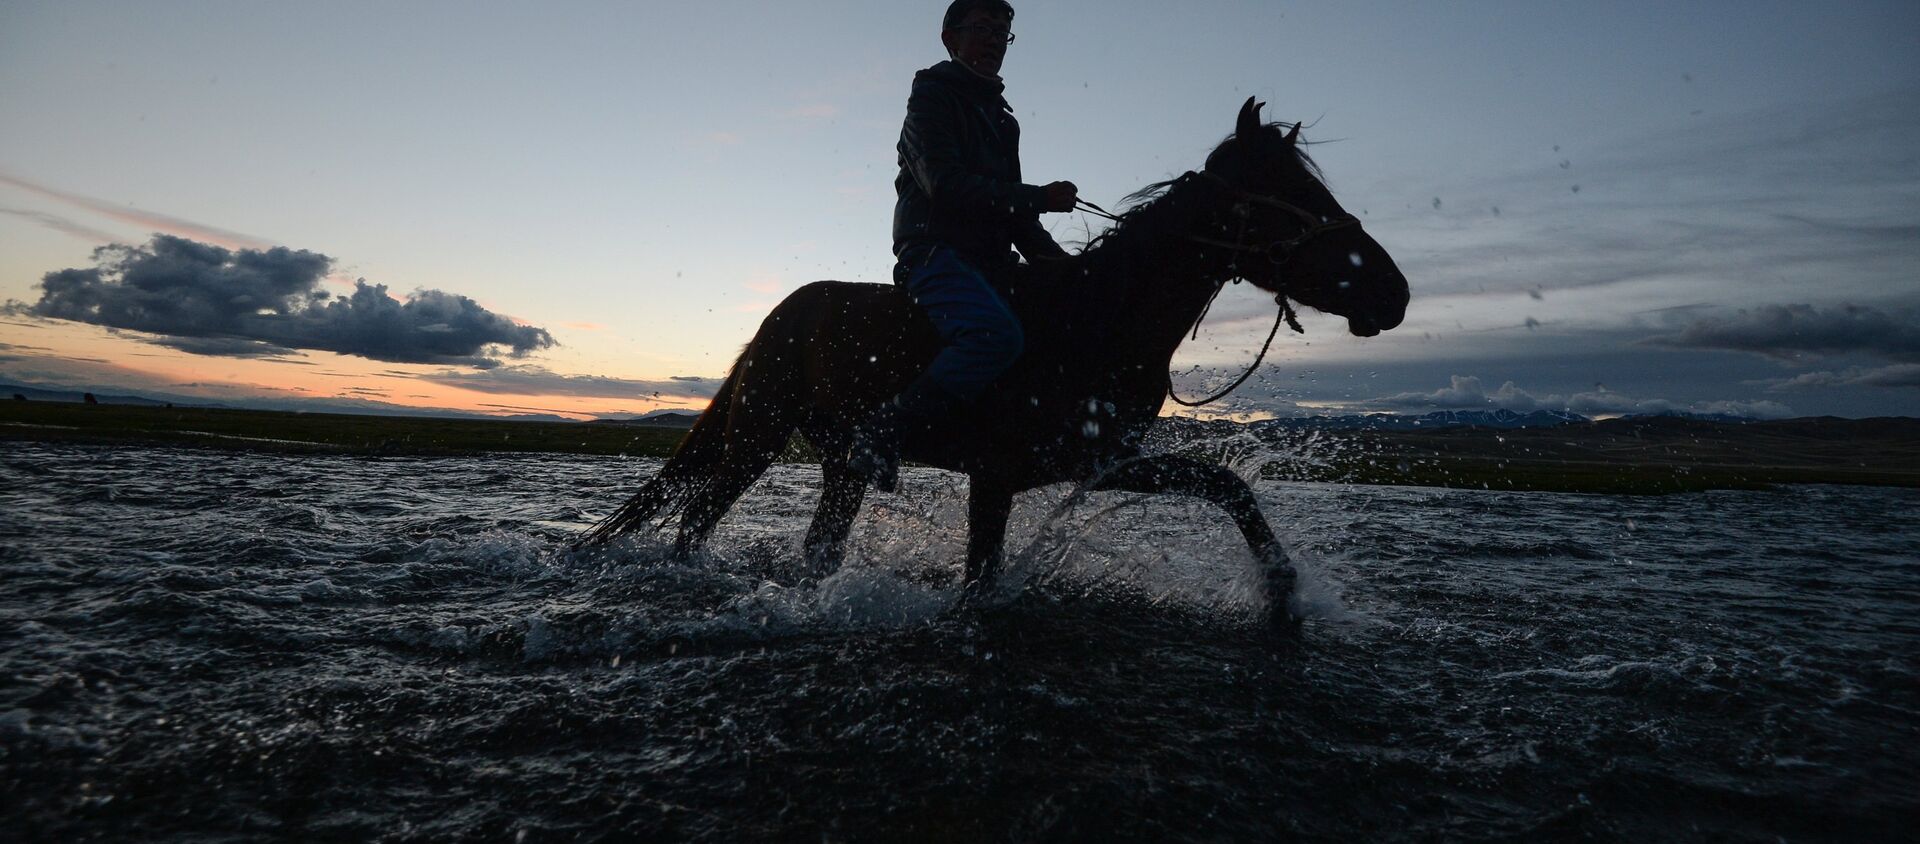 Чабан на лошади переходит реку. Архивное фото - Sputnik Кыргызстан, 1920, 02.07.2021